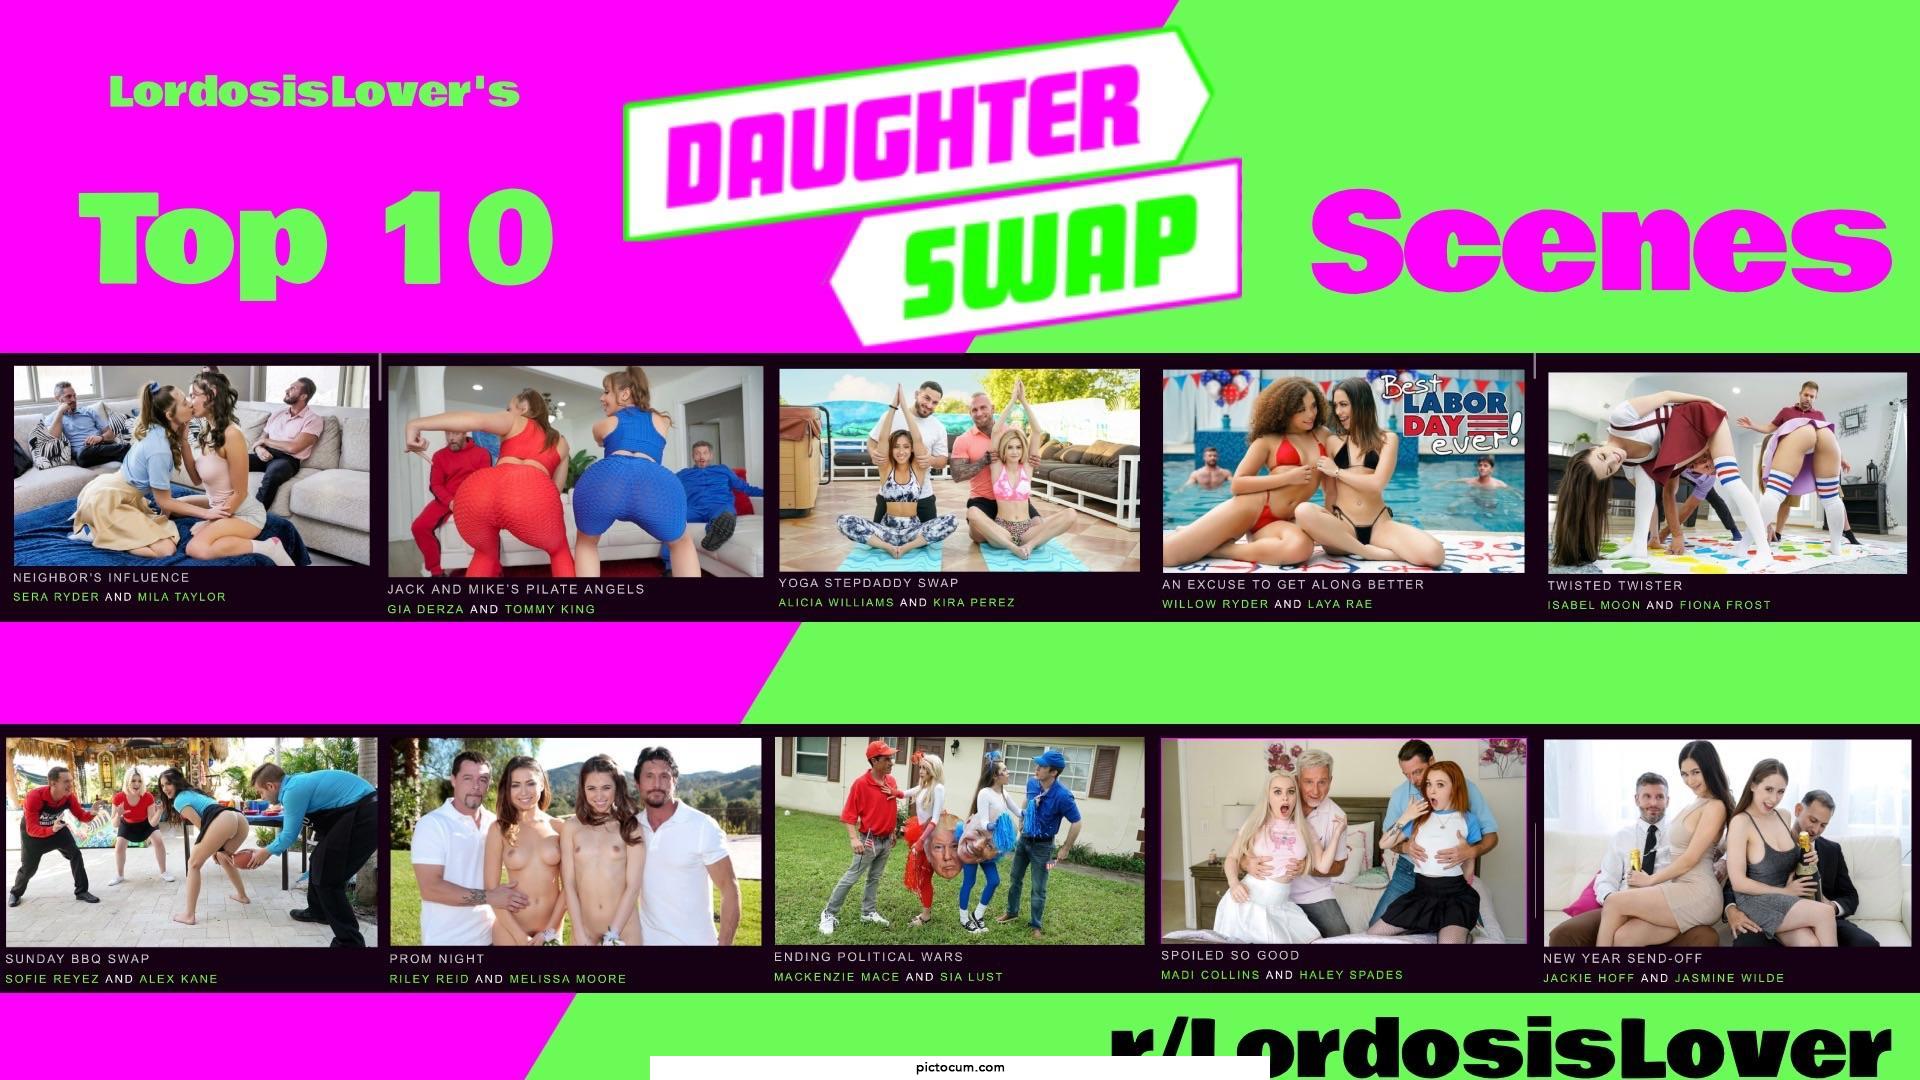 My Top 10 DaughterSwap Scenes